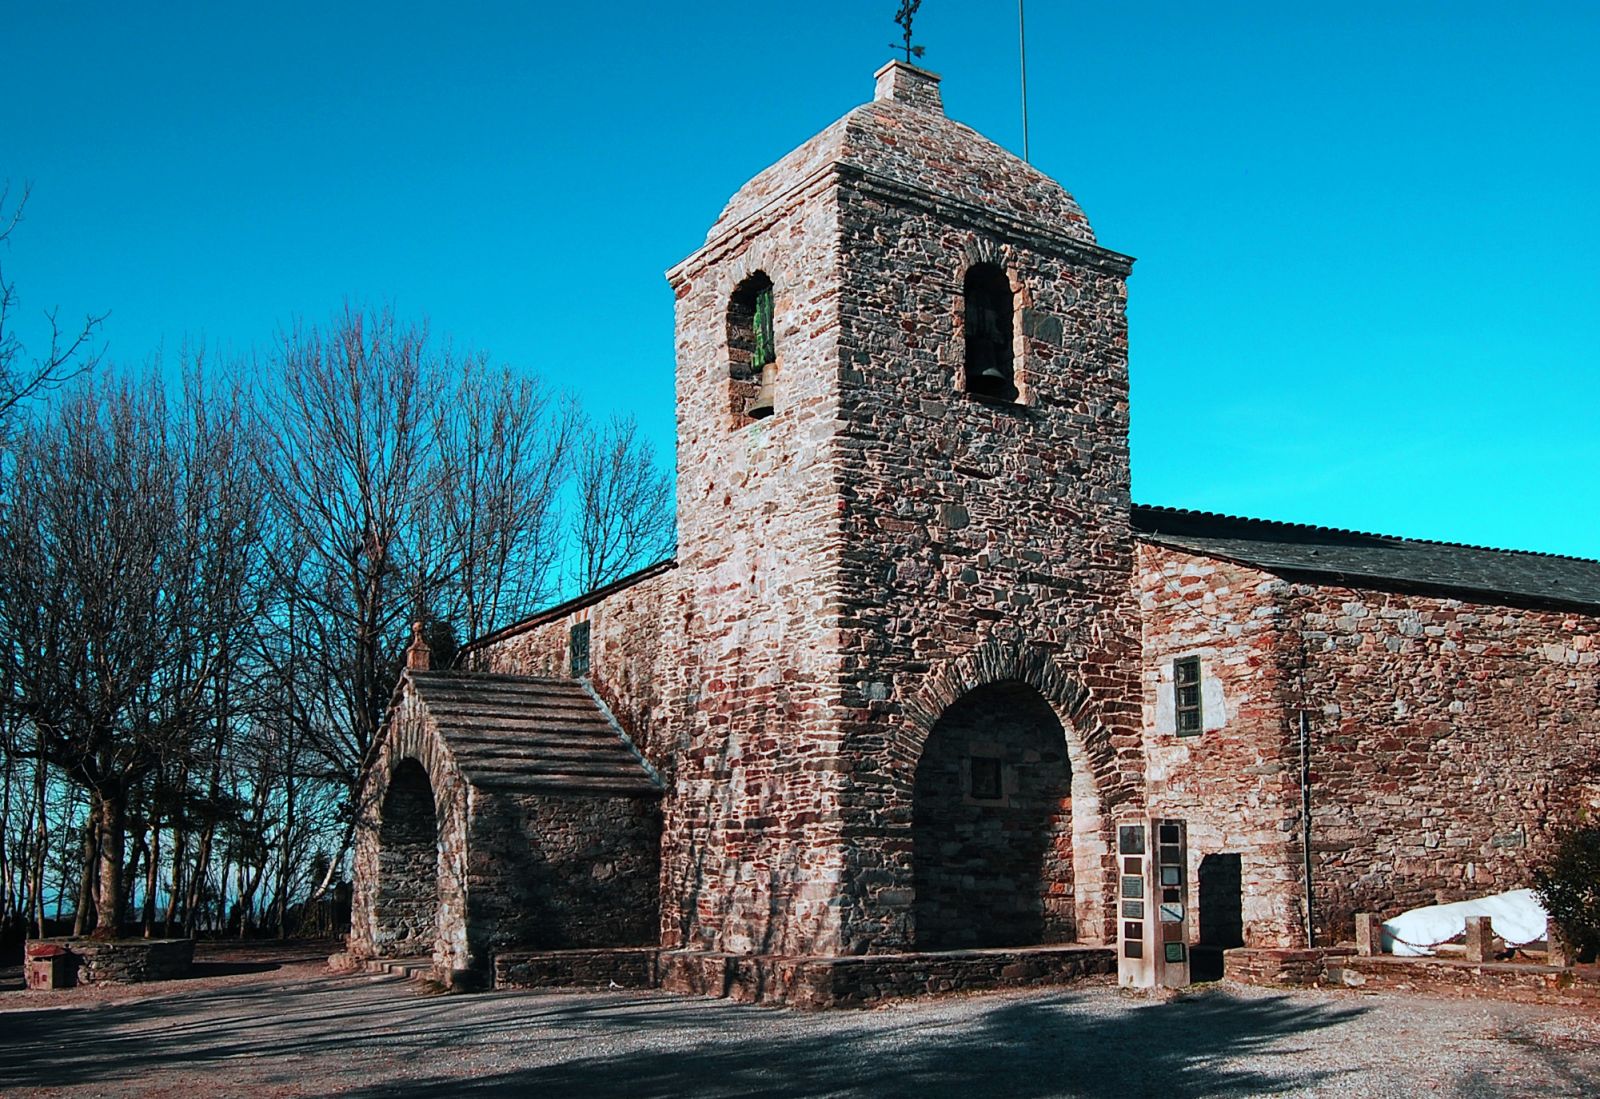 A nueve días a pie de Compostela, siguiendo el Camino, se encuentra la pequeña aldea de Cebreiro. Su principal tesoro es una iglesia de inconfundible estilo románico ibérico